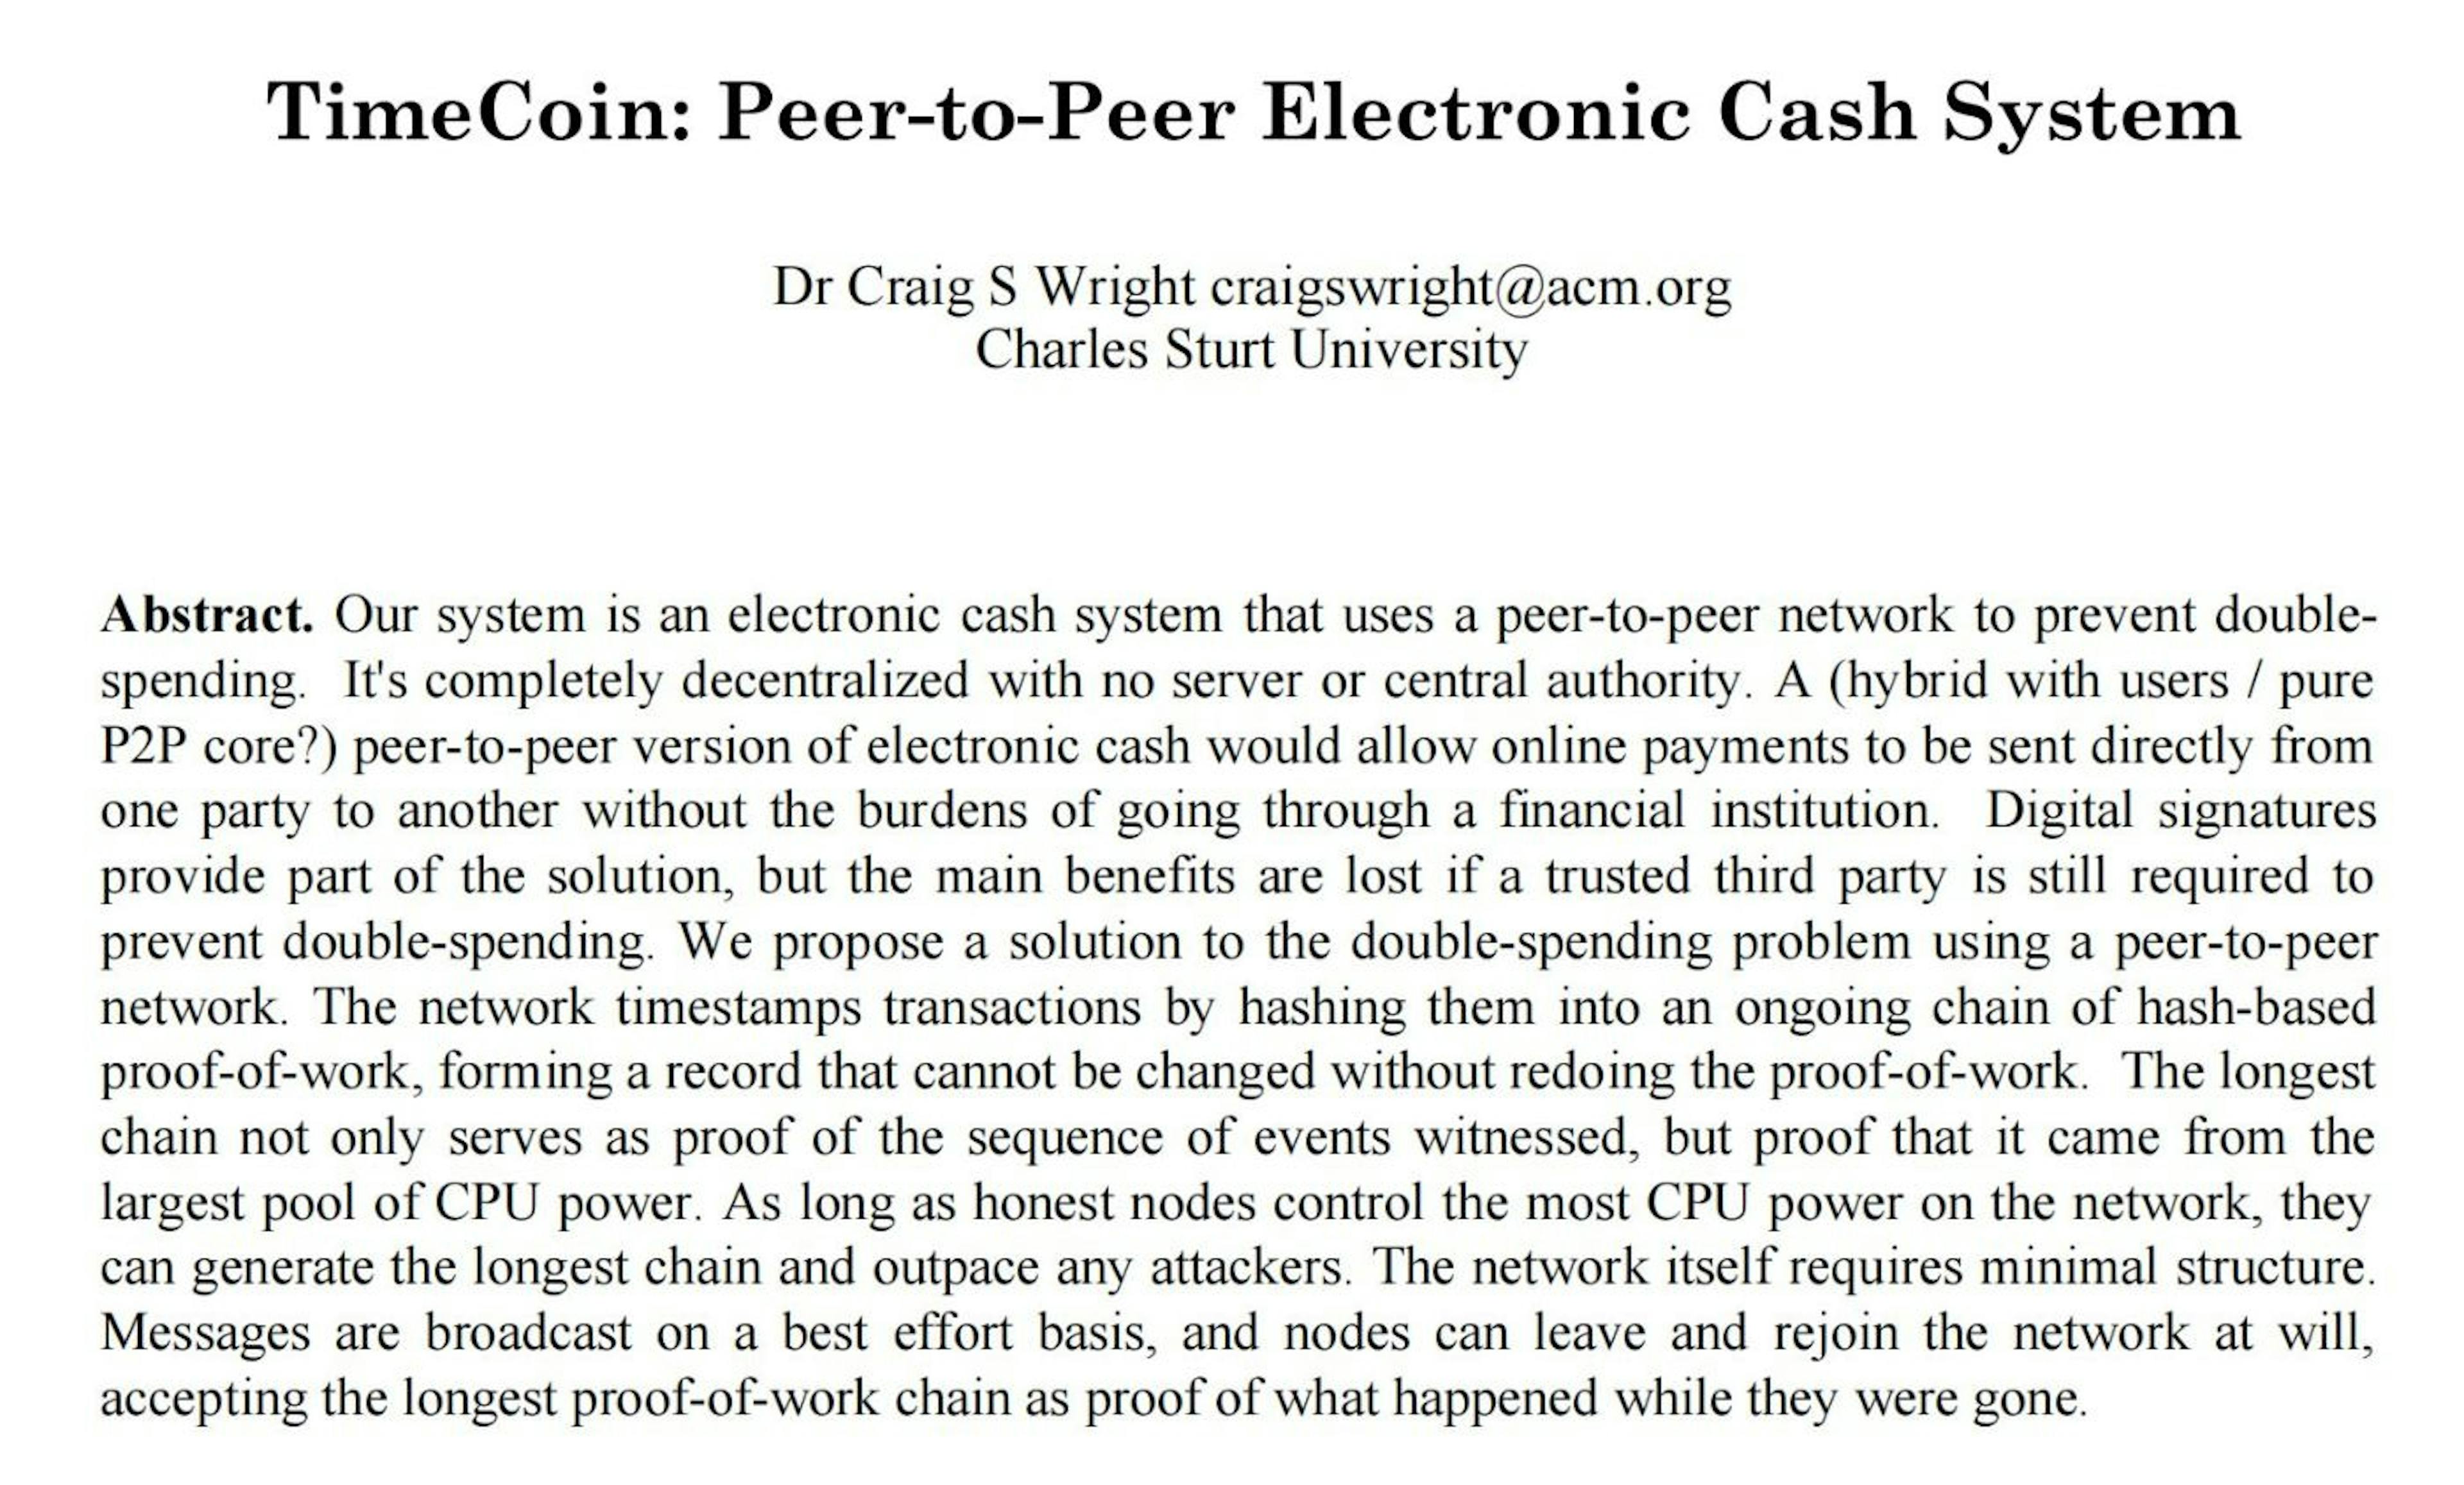 2019'da Craig Wright, Bitcoin teknik incelemesinin halka açık 2009 PDF sürümünü bitcoin.org'dan aldı ve onu 2008'in başlarındaki bir Bitcoin teknik inceleme taslağının görünümünü vermek için değiştirmeye çalıştı. Sahtecilik sürecinin bir kısmı, Bitcoin'i TimeCoin'e (lol) değiştirmek ve orijinal PDF dosyasının meta verilerini özensizce ayarlamaktır.